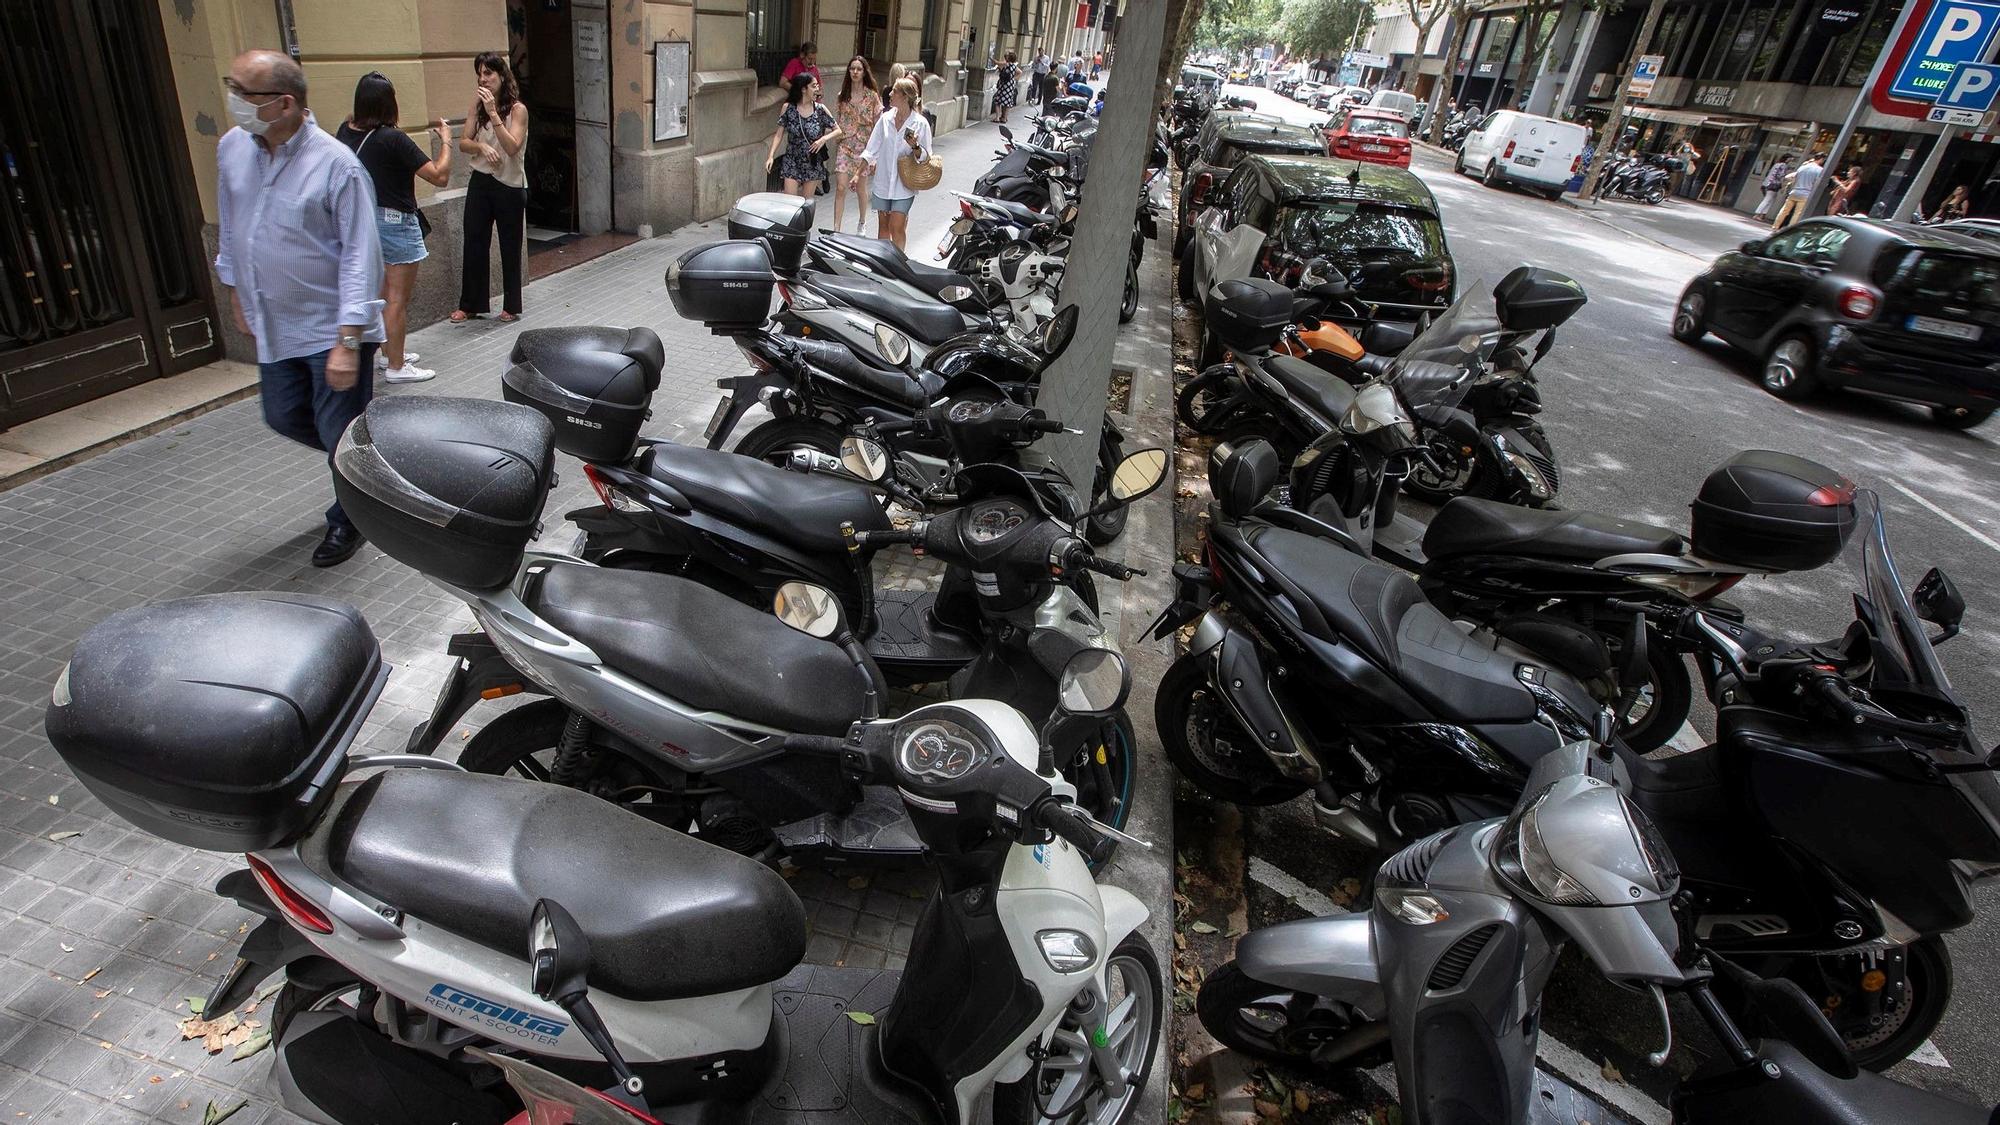 Barcelona 21/06/2022 Motos mal aparcadas sobre la acera En la foto motos aparcadas sobre la acera de carrer Còrsega entre Rambla Catalunya y Balmes Fotografía de Ferran Nadeu